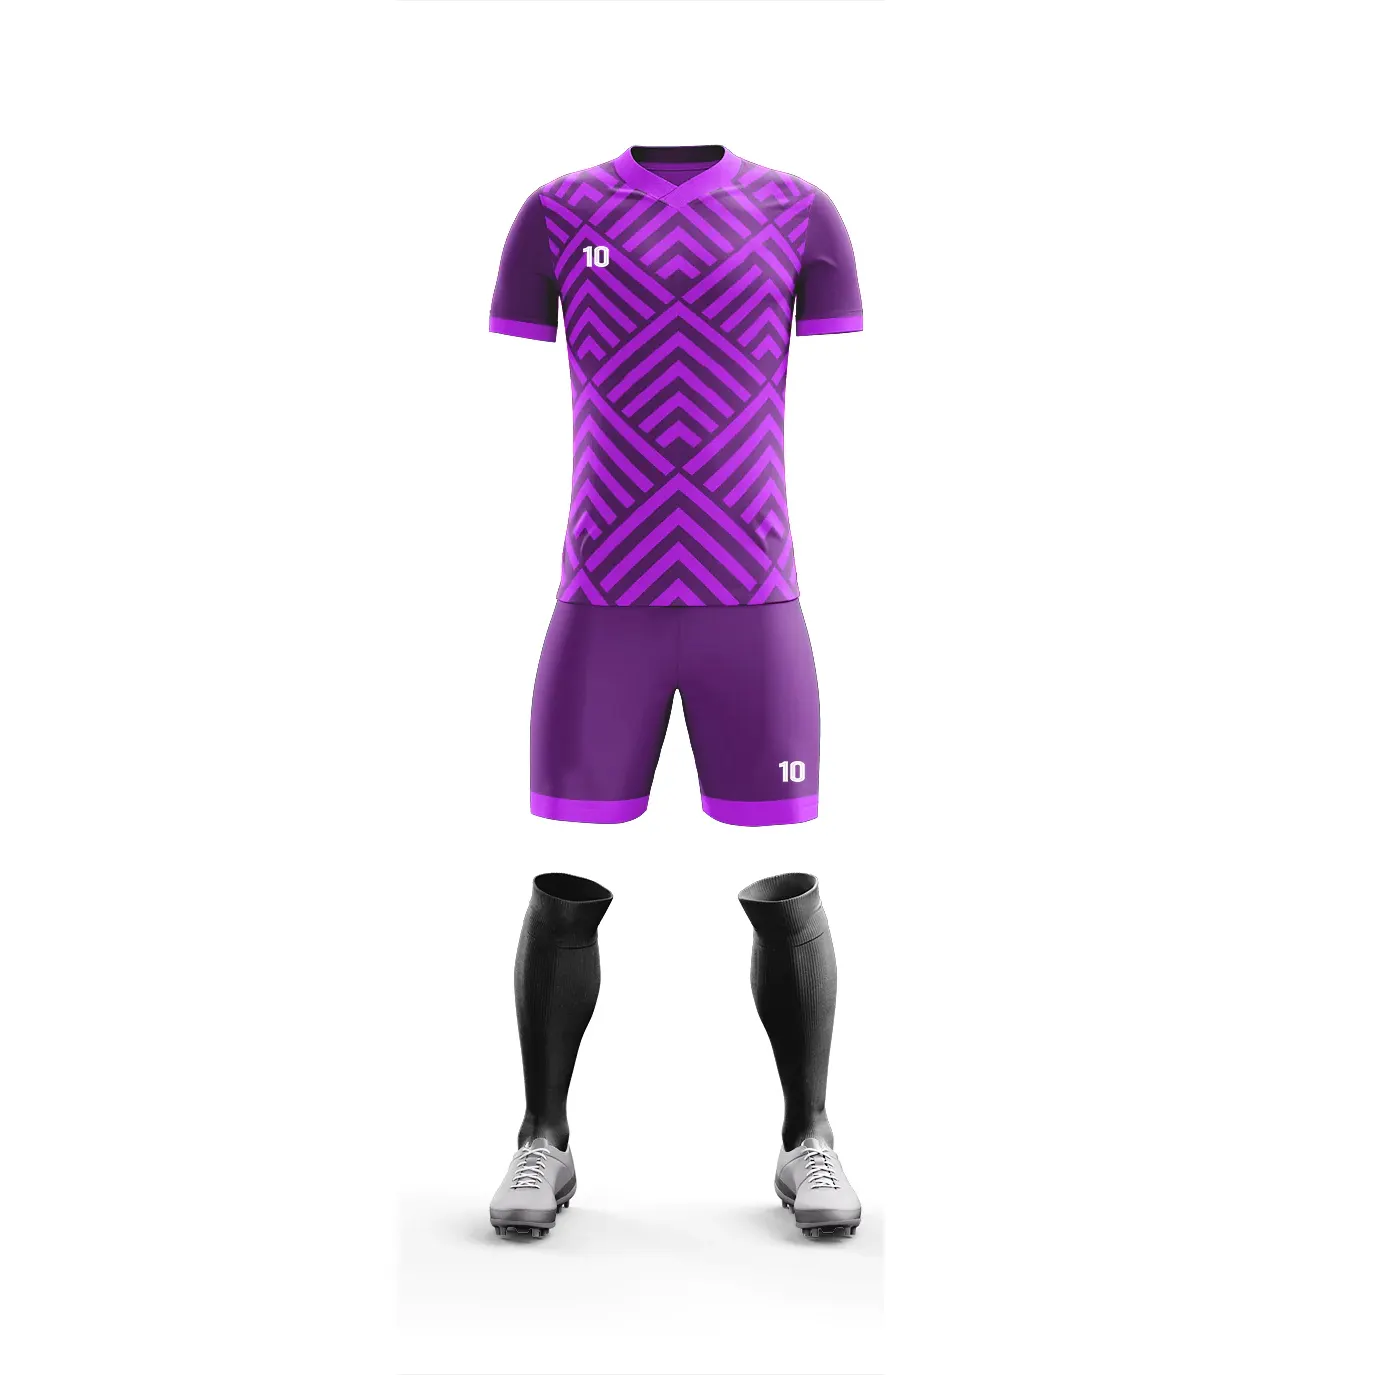 Uniforme de fútbol de sublimación de tarifa al por mayor, conjuntos de ropa de fútbol con nombre de equipo personalizado, uniforme de diseño único personalizado